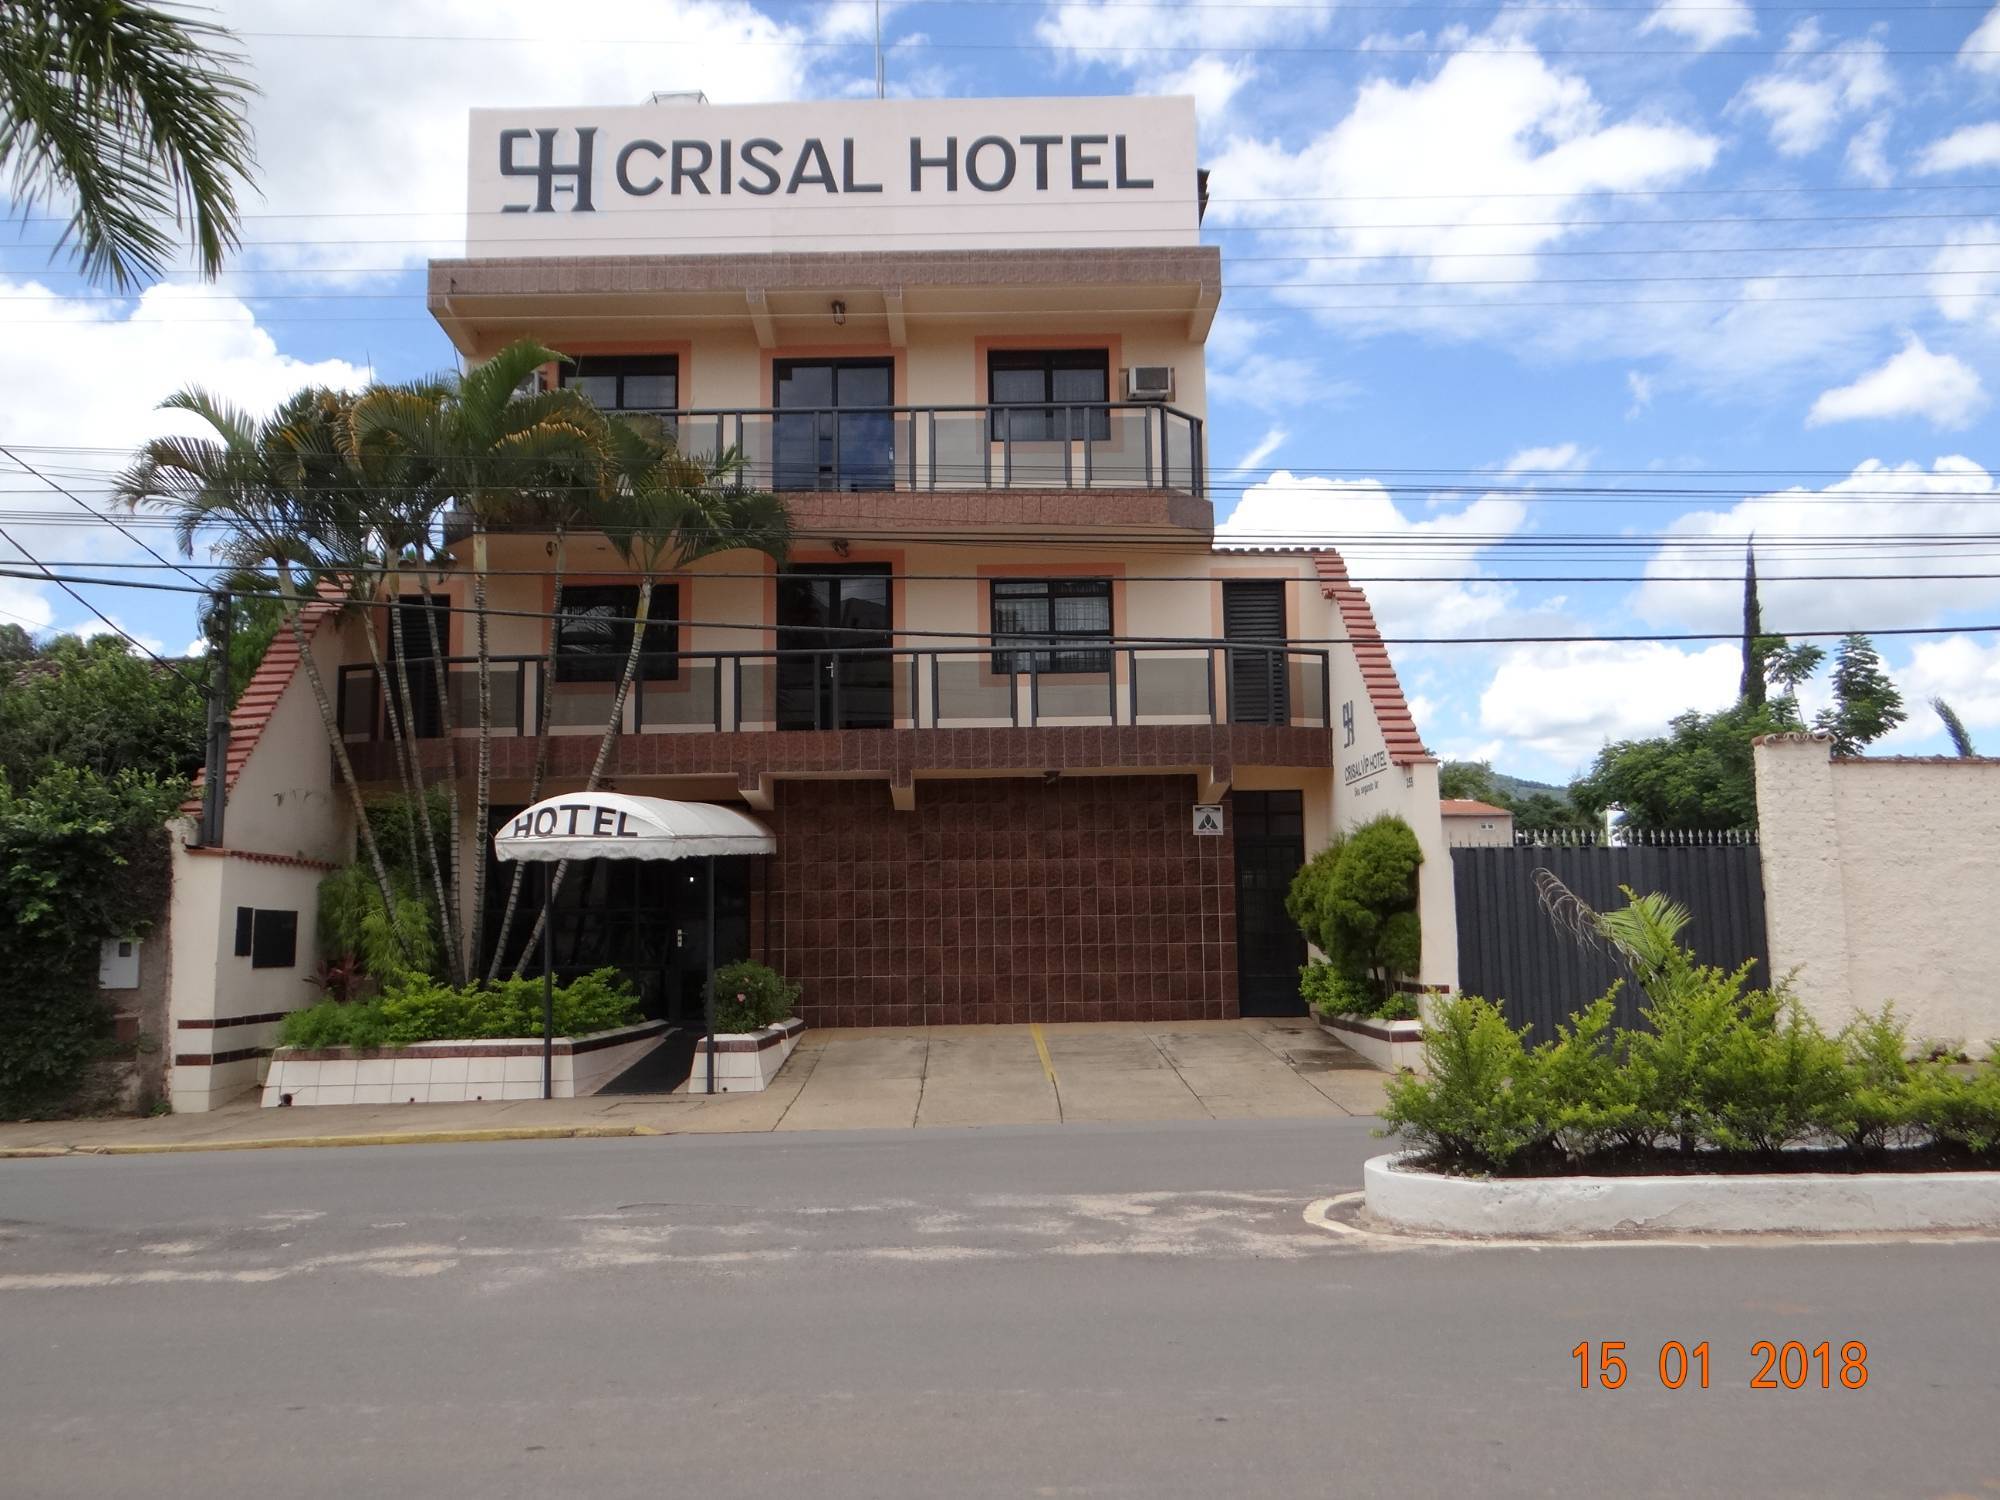 Conforto e qualidade você encontra aqui no Hotel Crisal em Santa Rita do Sapucaí.